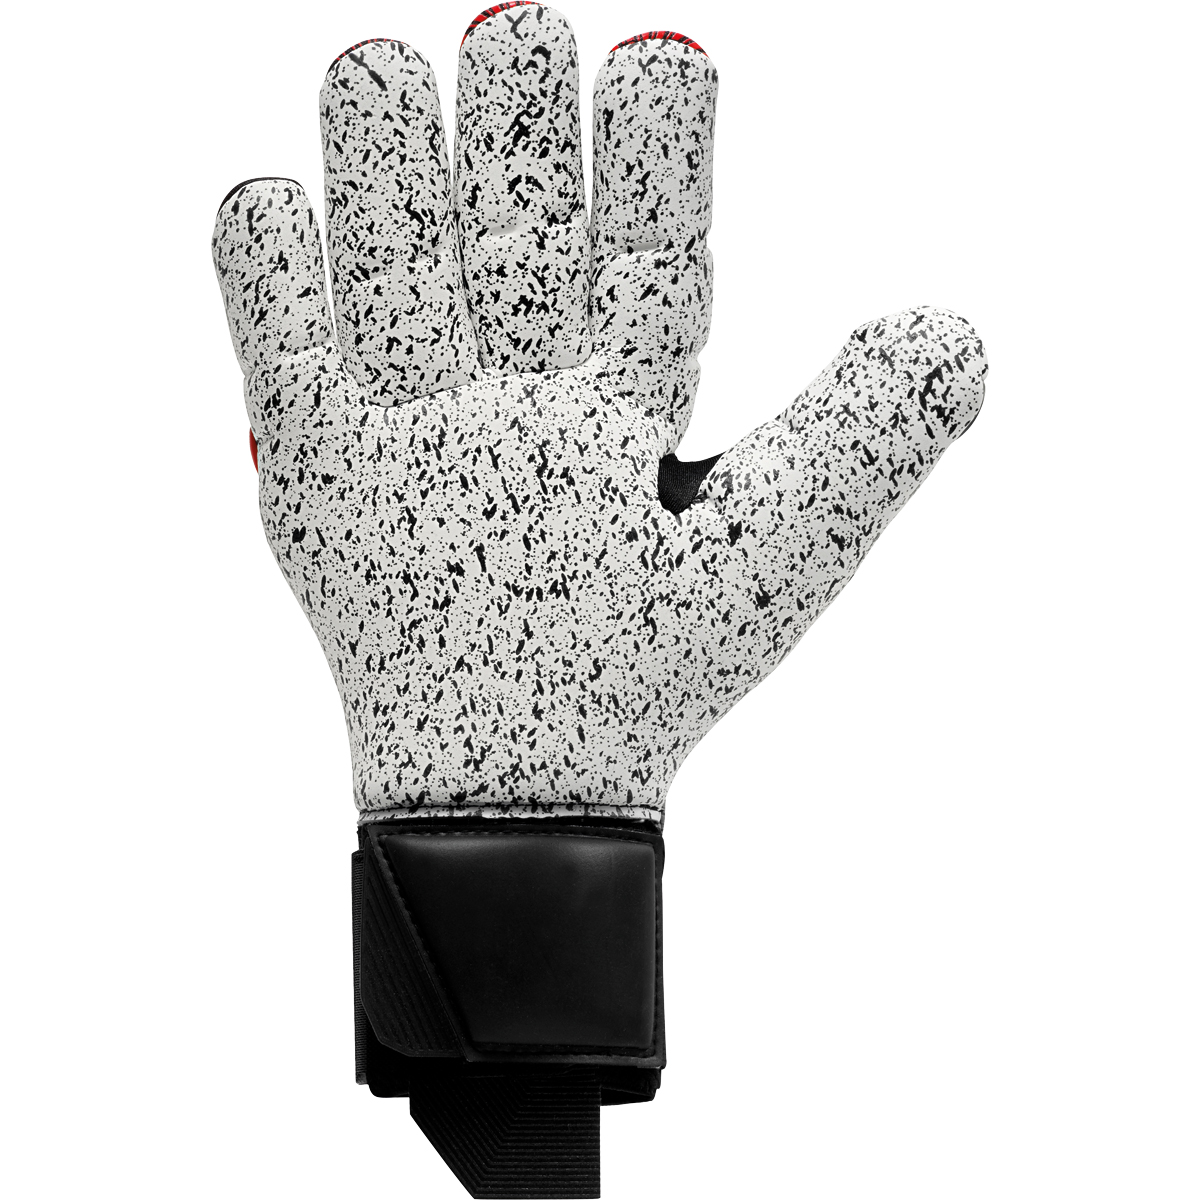 uhlsport Torwarthandschuh Powerline Supergrip+ Finger Surround schwarz/rot/weiß